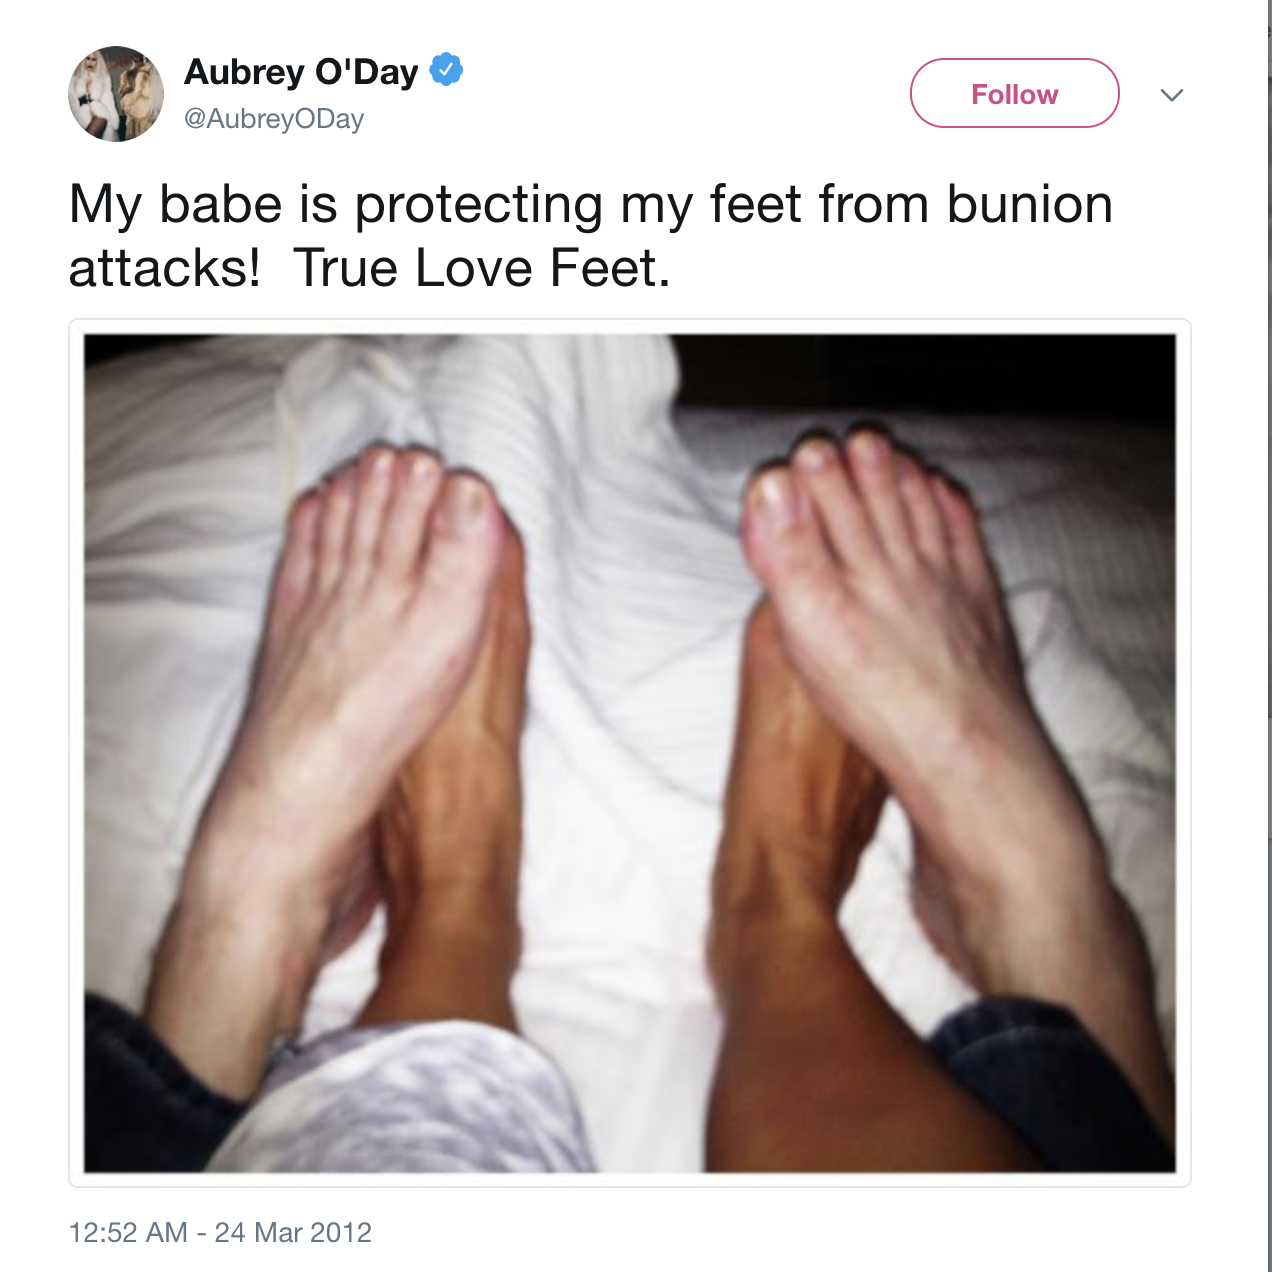 Aubrey star twitter